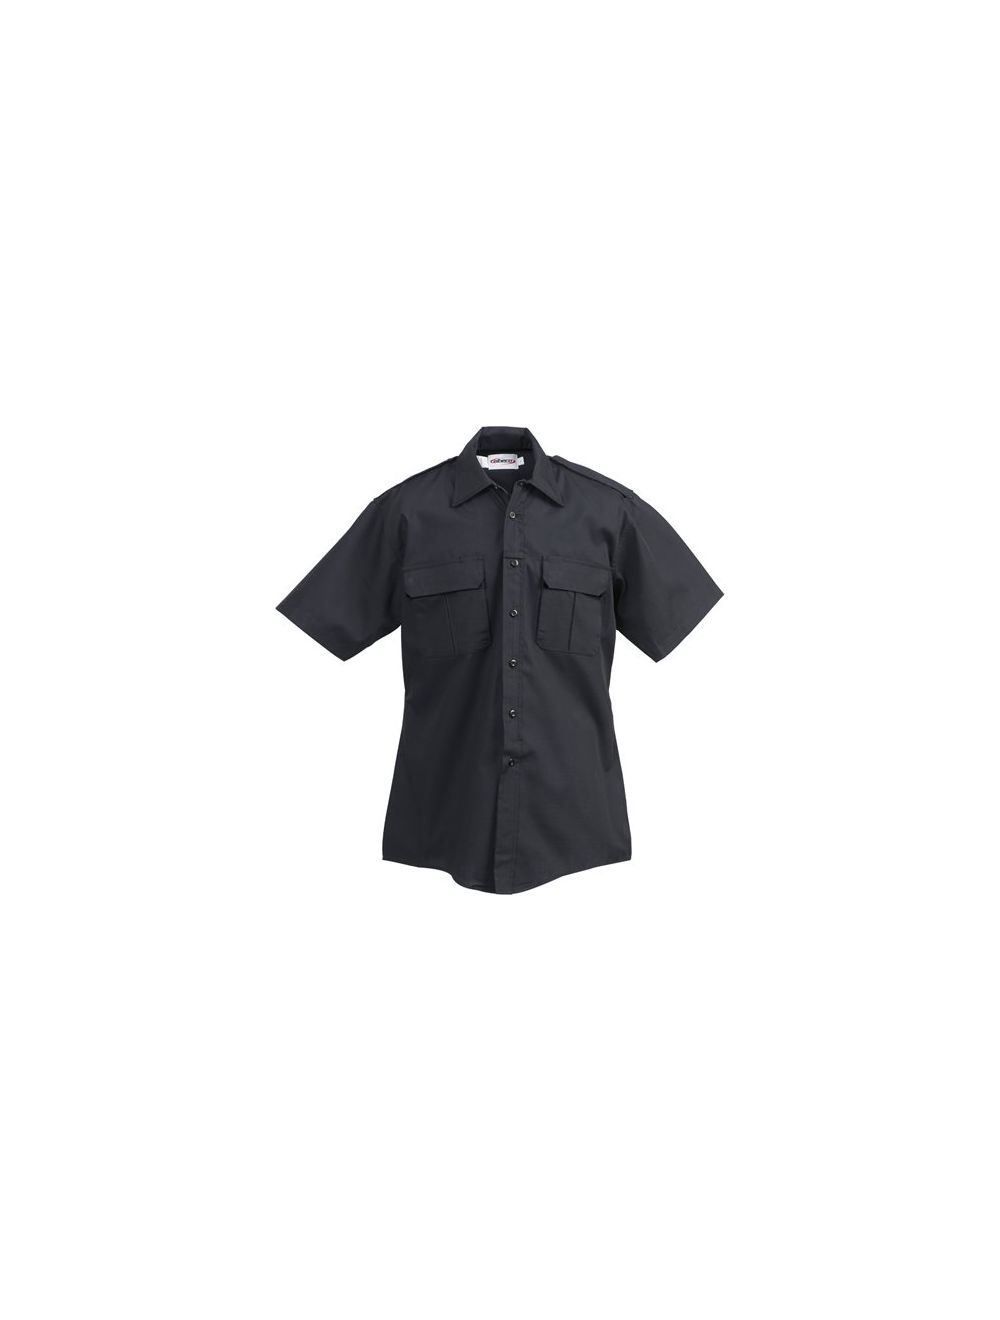 ADU RipStop Shirt - Short Sleeve